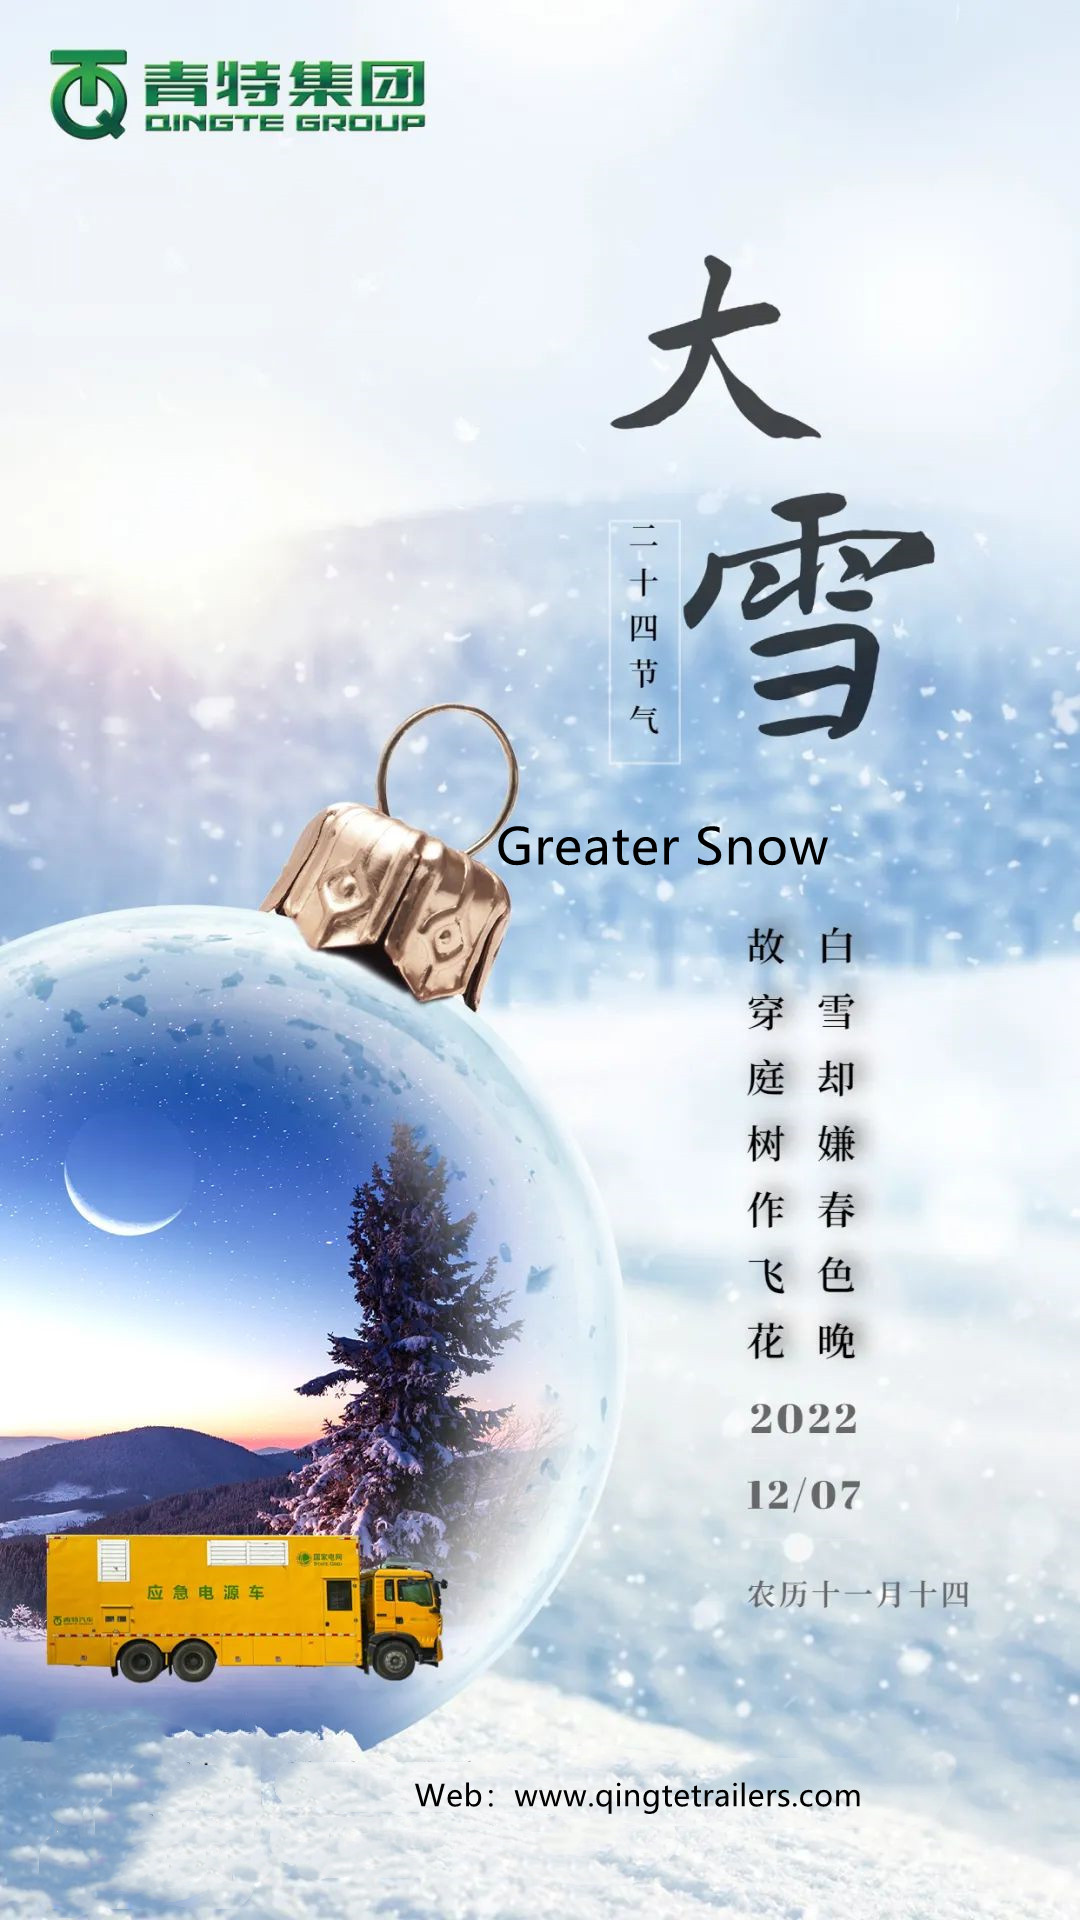 Qingte посылает тепло на большой снег